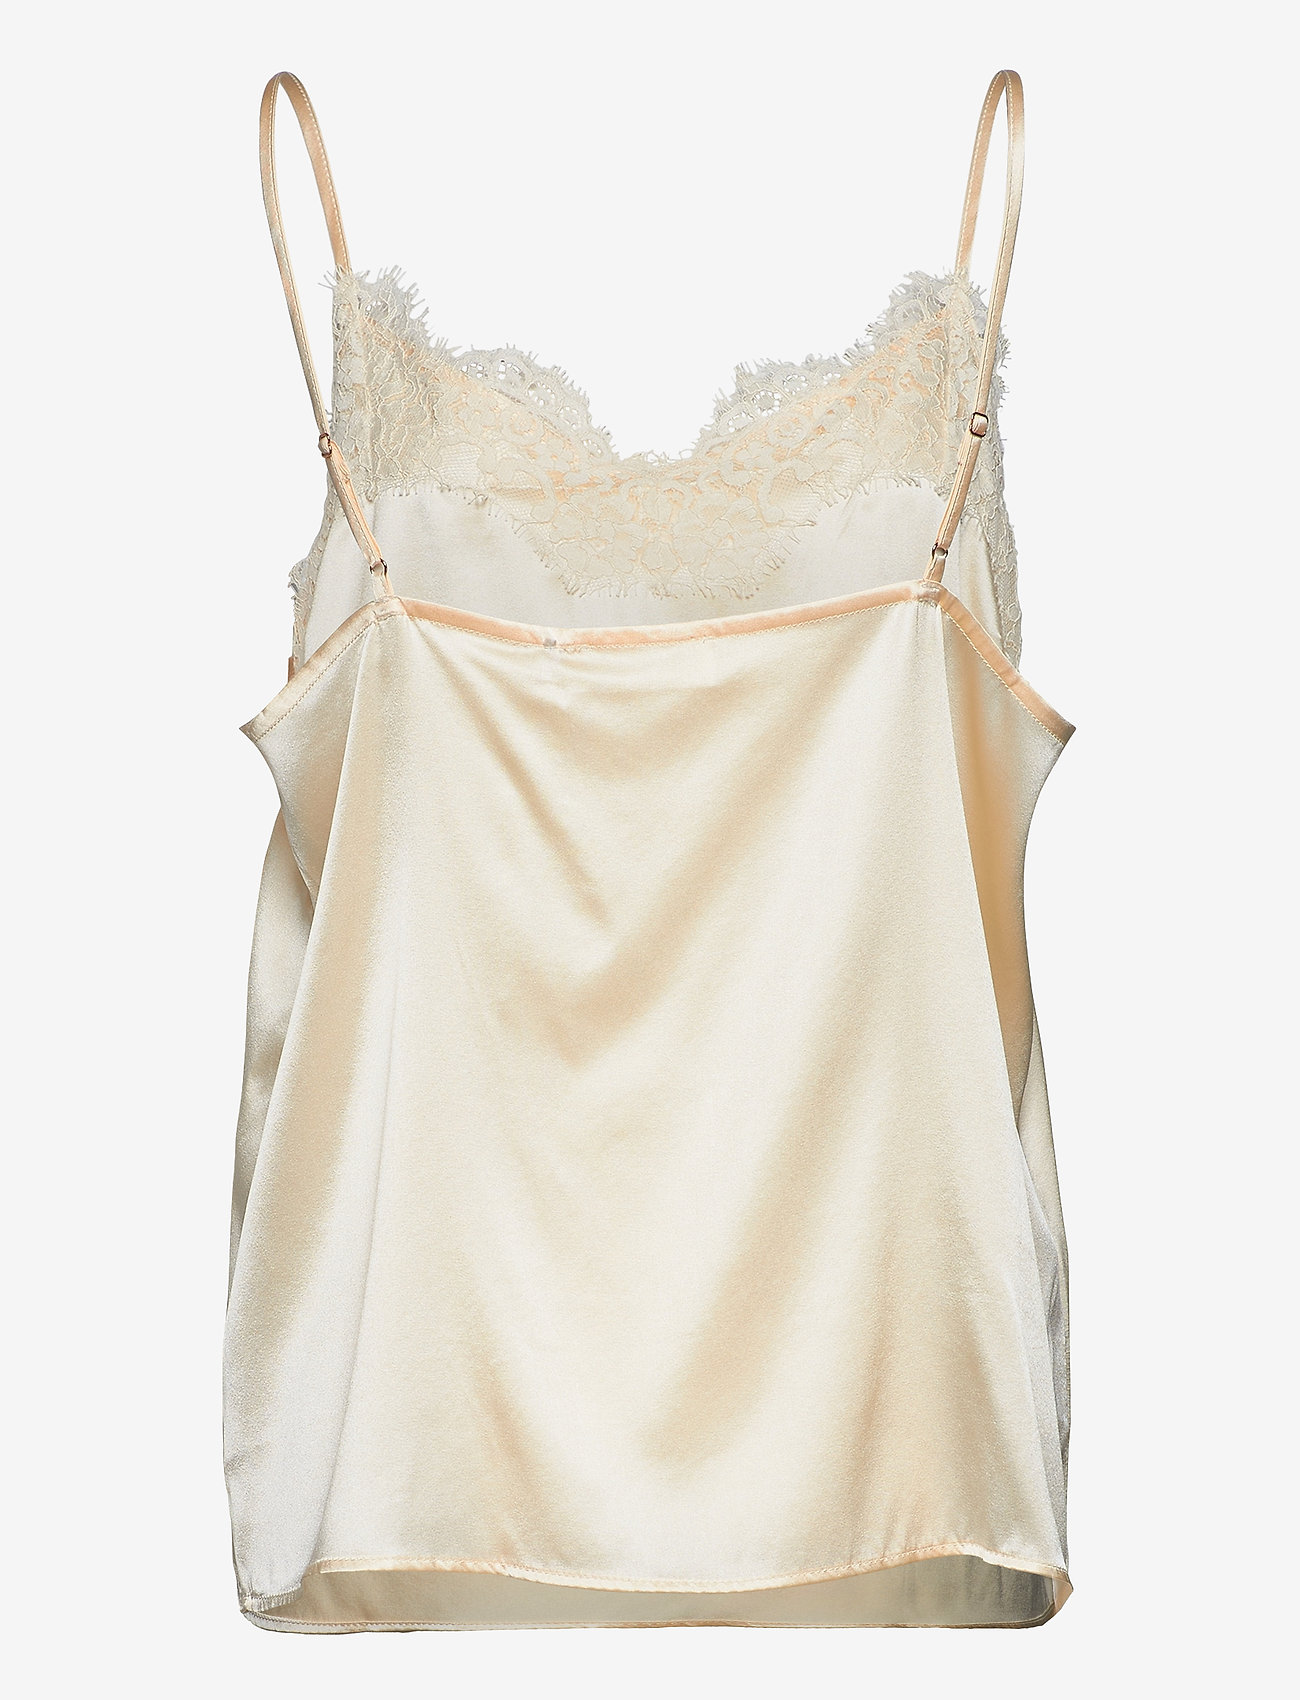 Rosemunde - Silk strap top - sleeveless blouses - ivory - 1